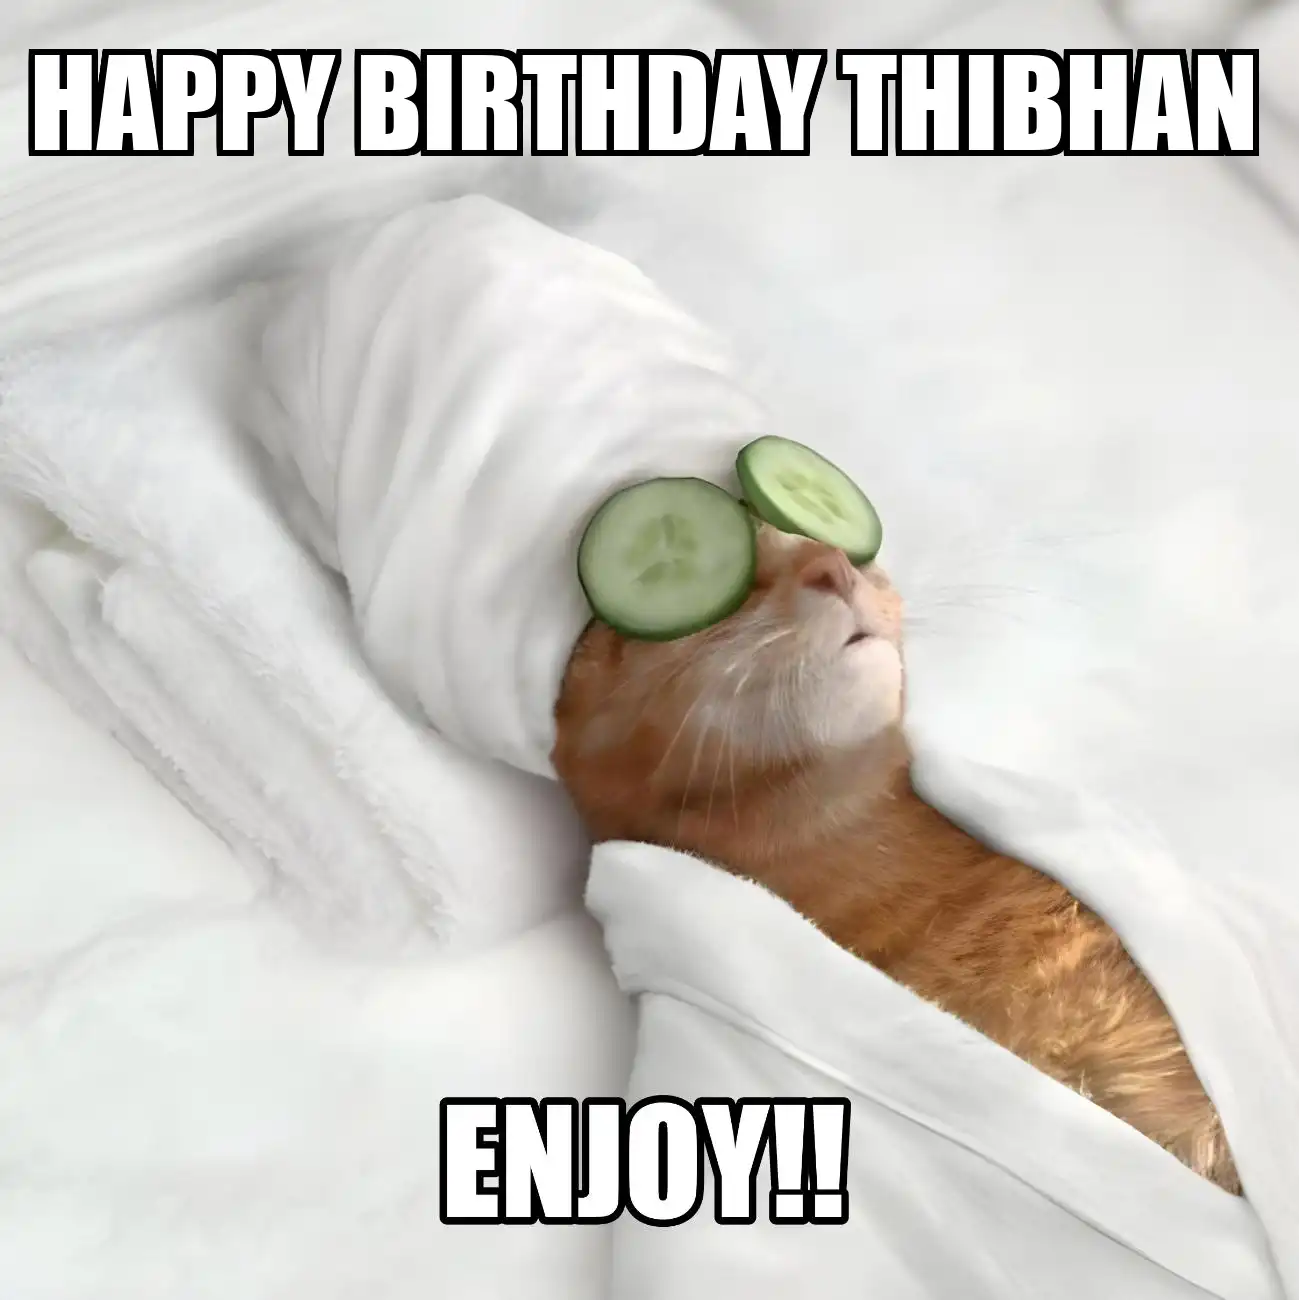 Happy Birthday Thibhan Enjoy Cat Meme